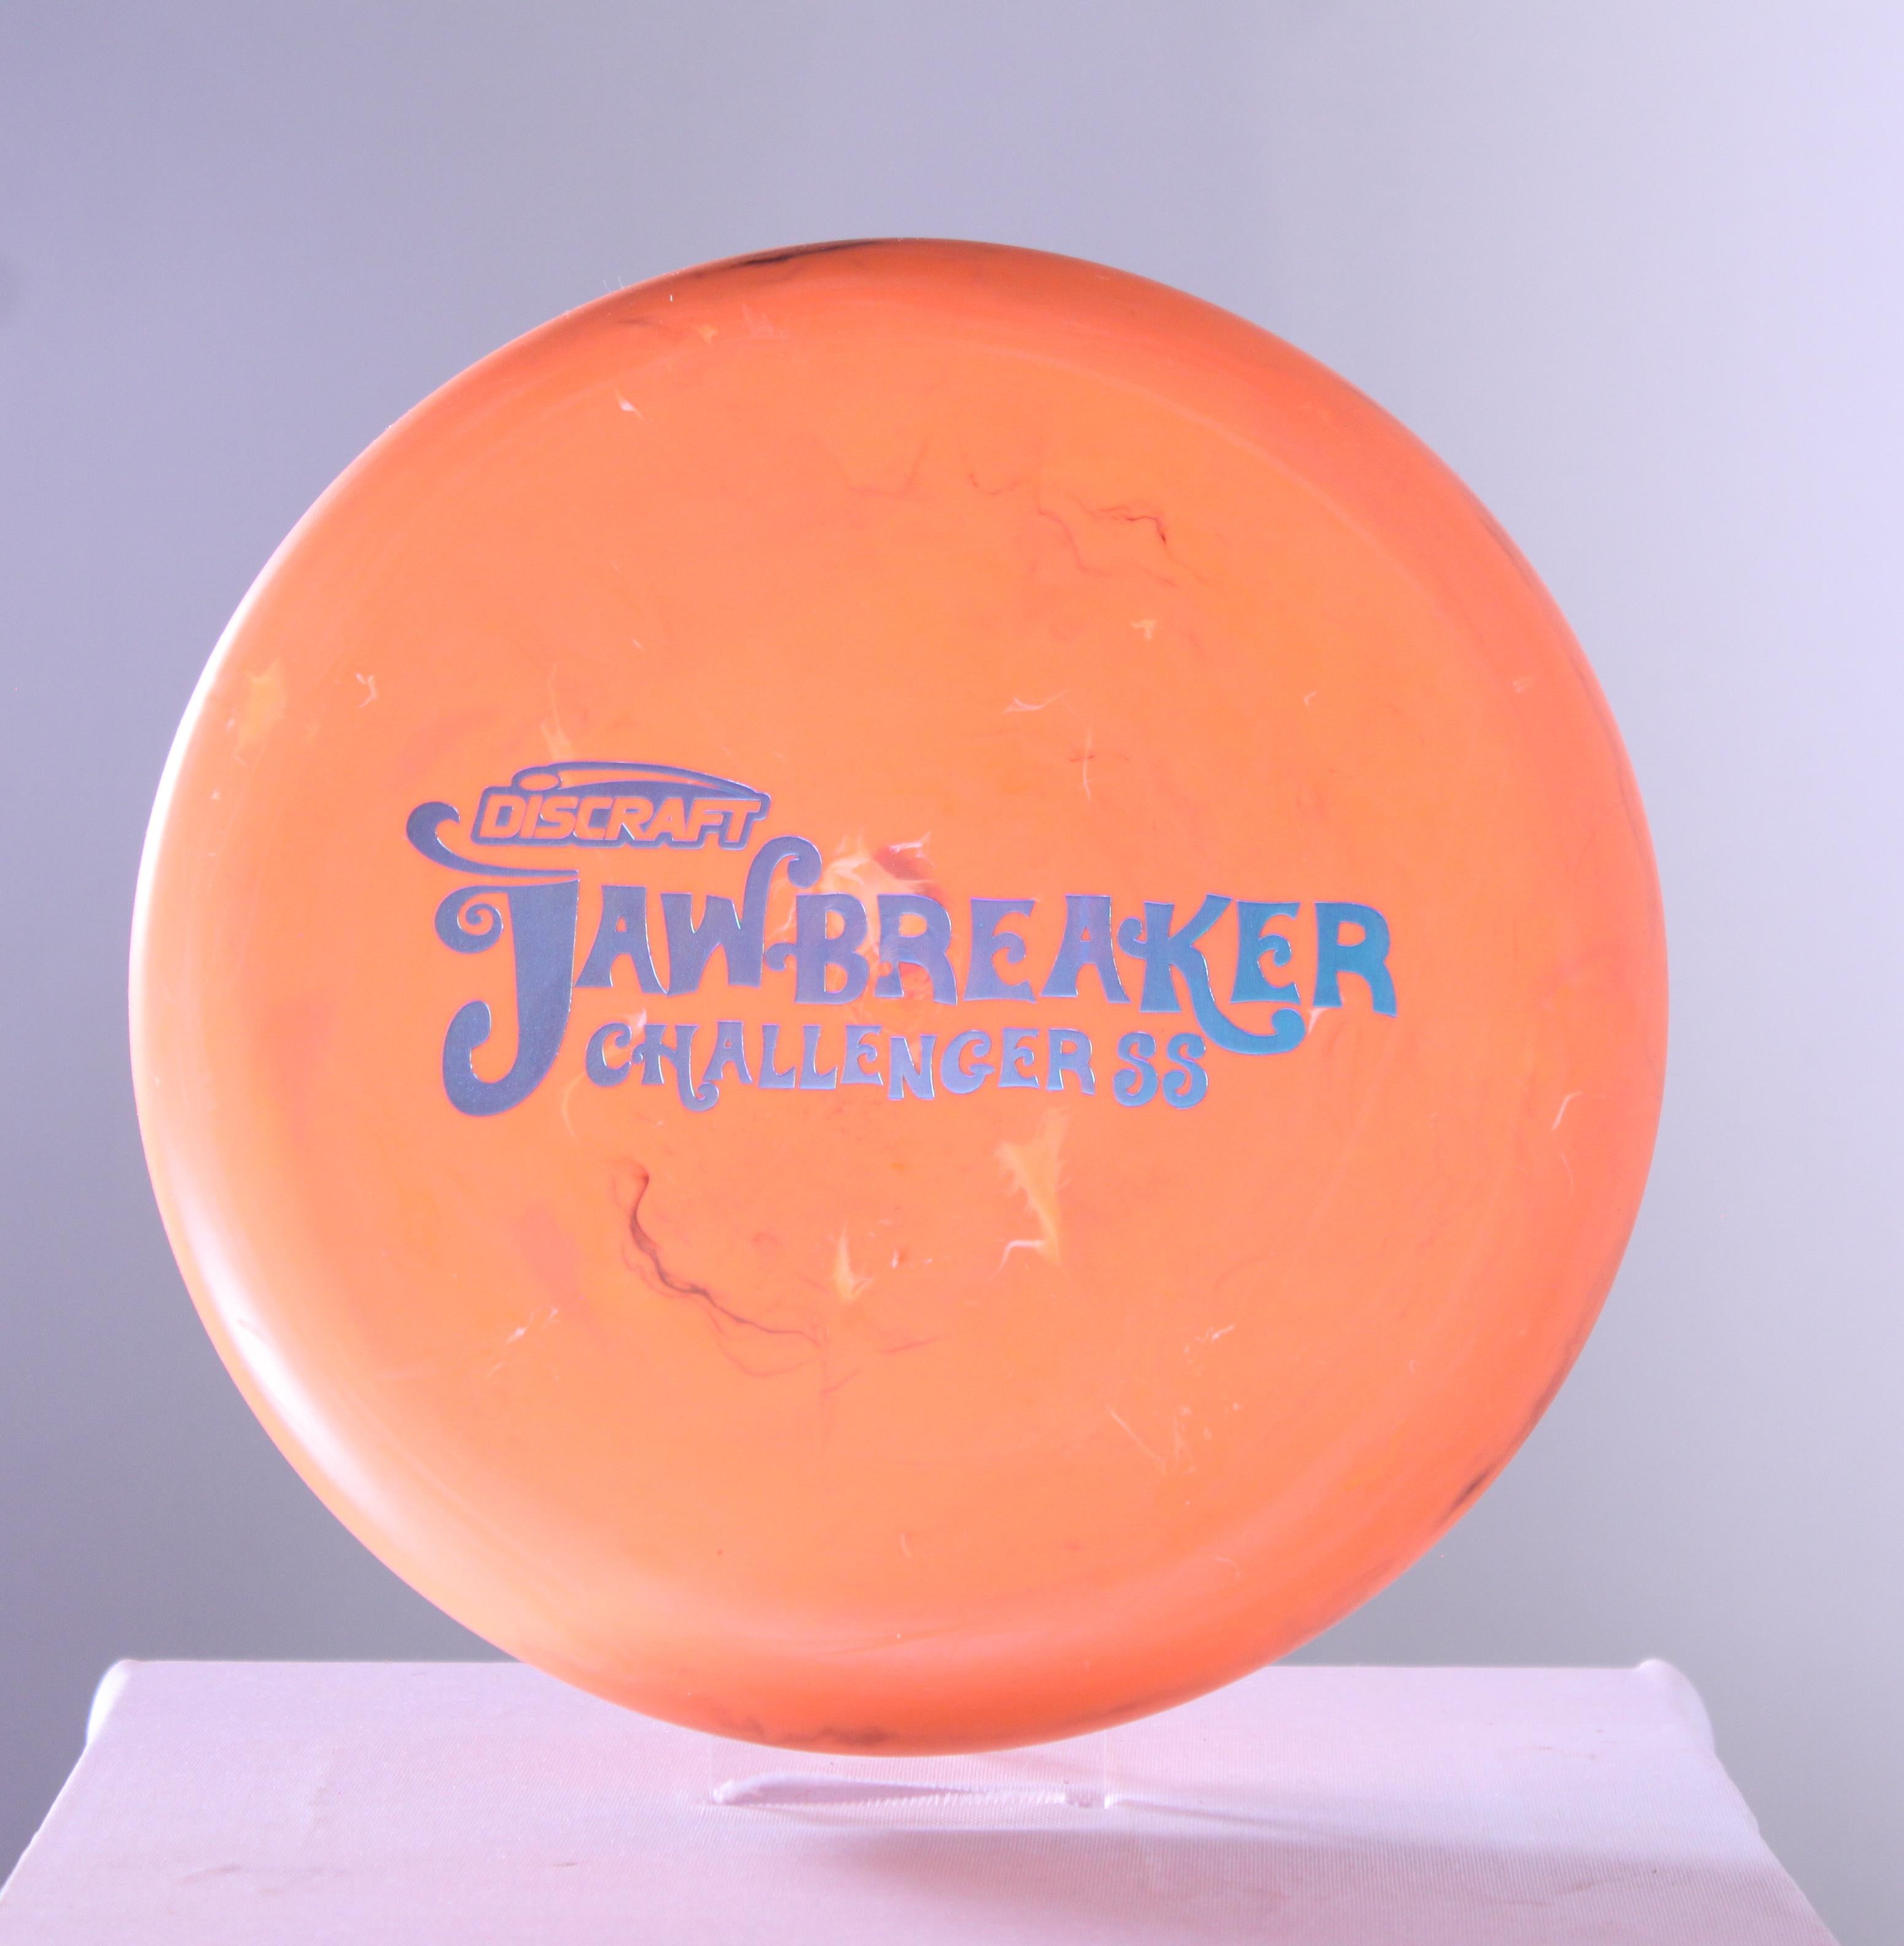 Jawbreaker Challenger SS